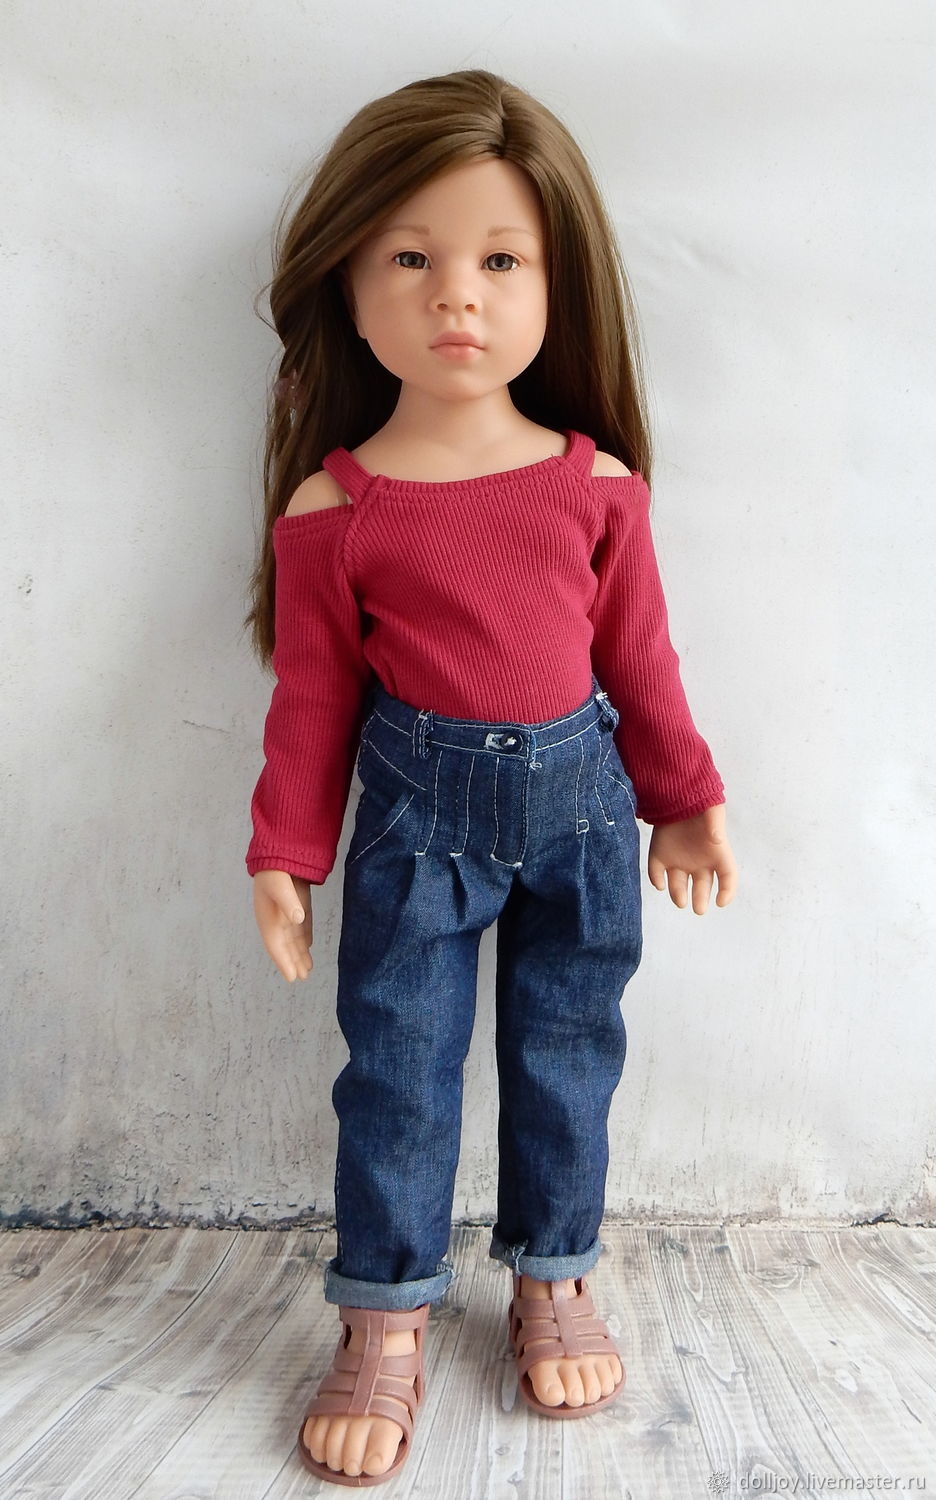 Кукла в джинсах